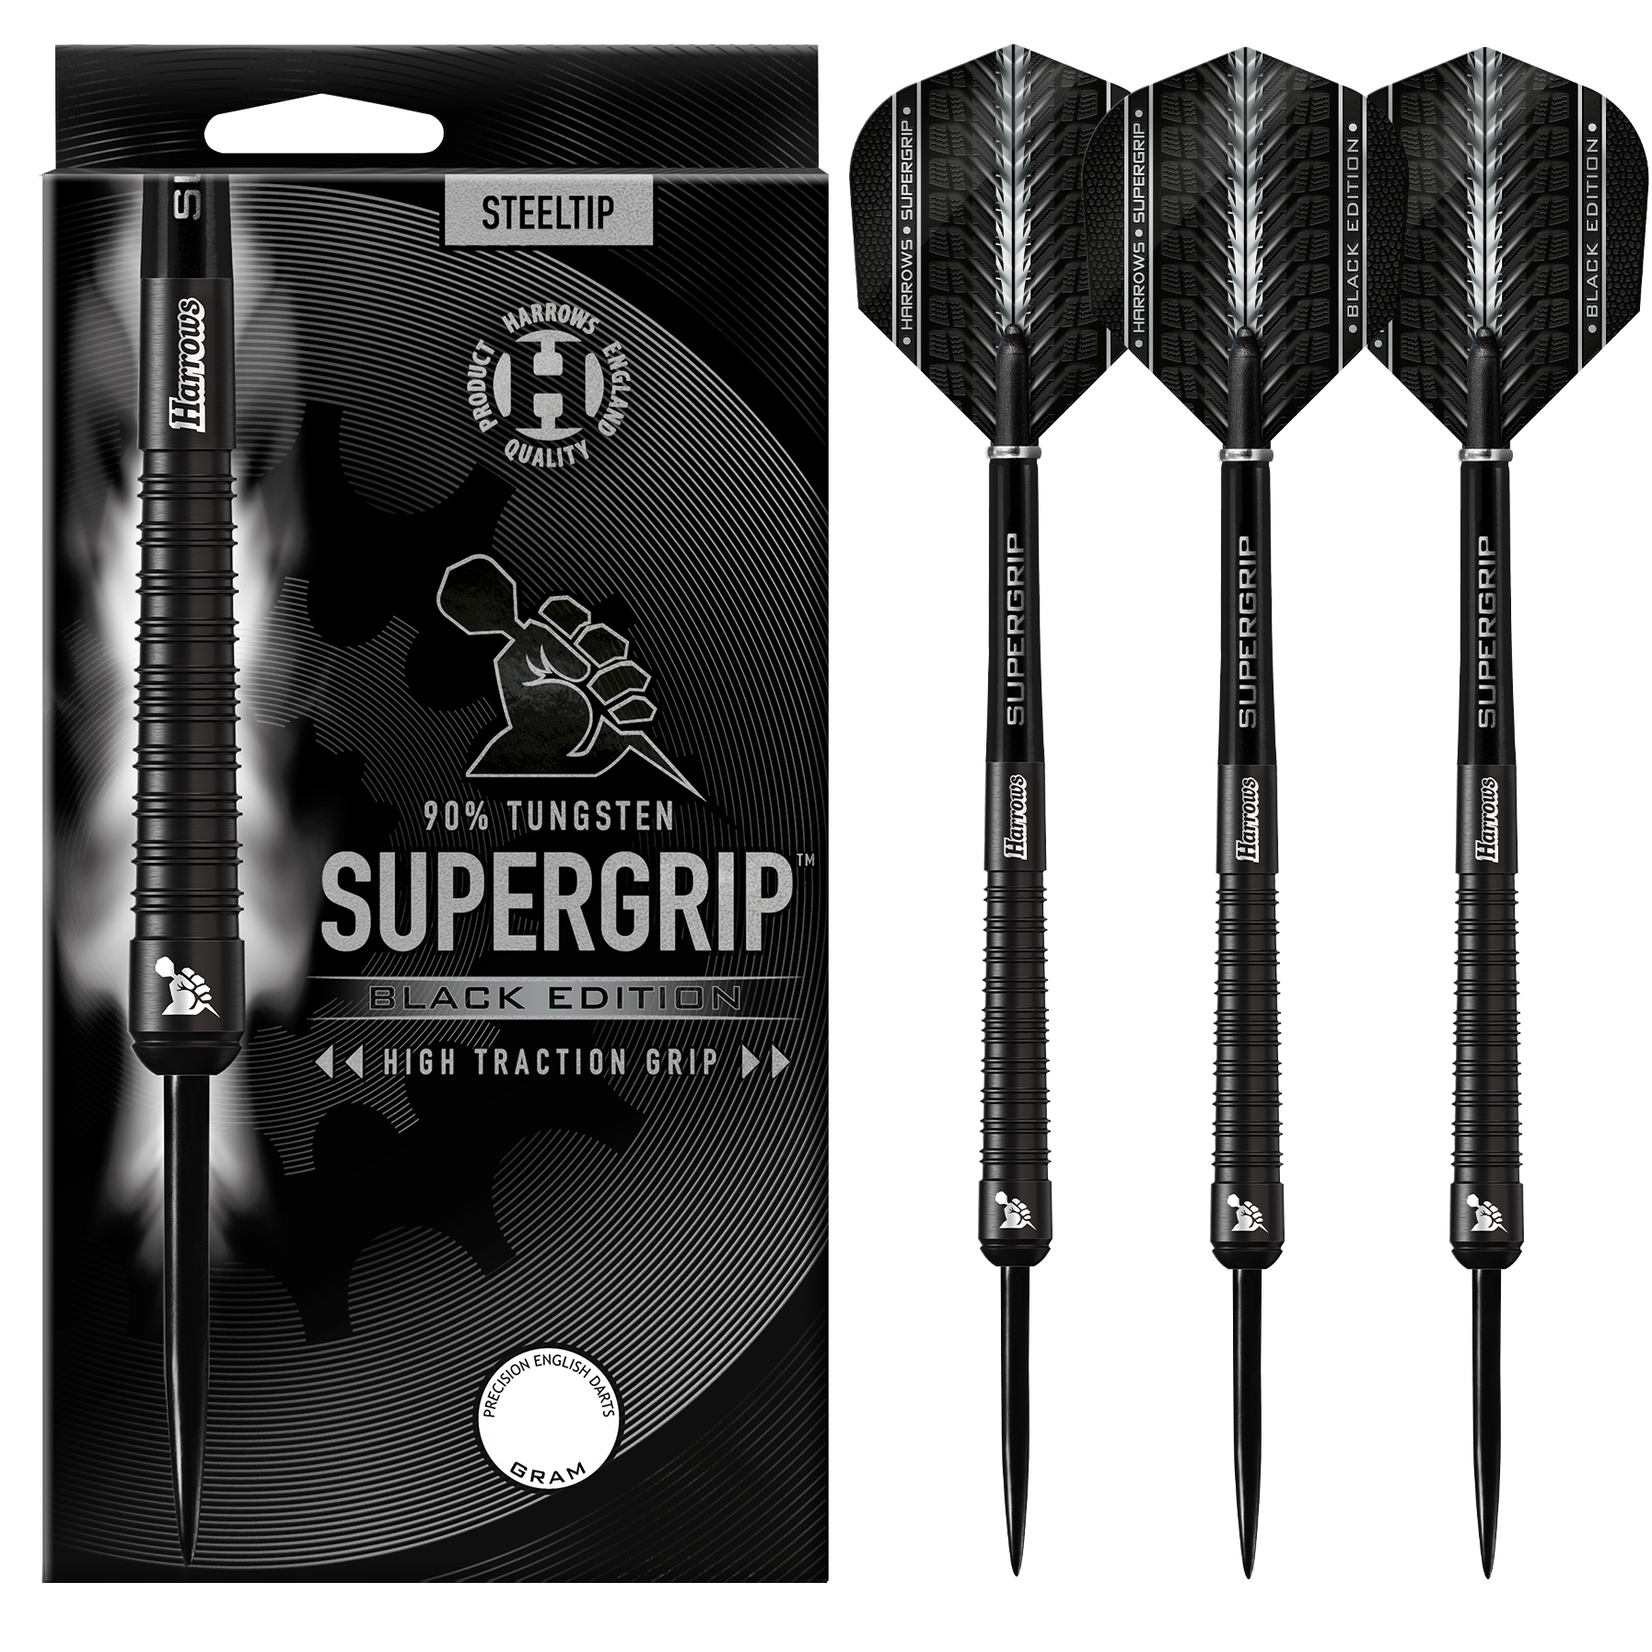 Harrows Darts Harrows Supergrip Black Edition 90% Steel Tip Darts